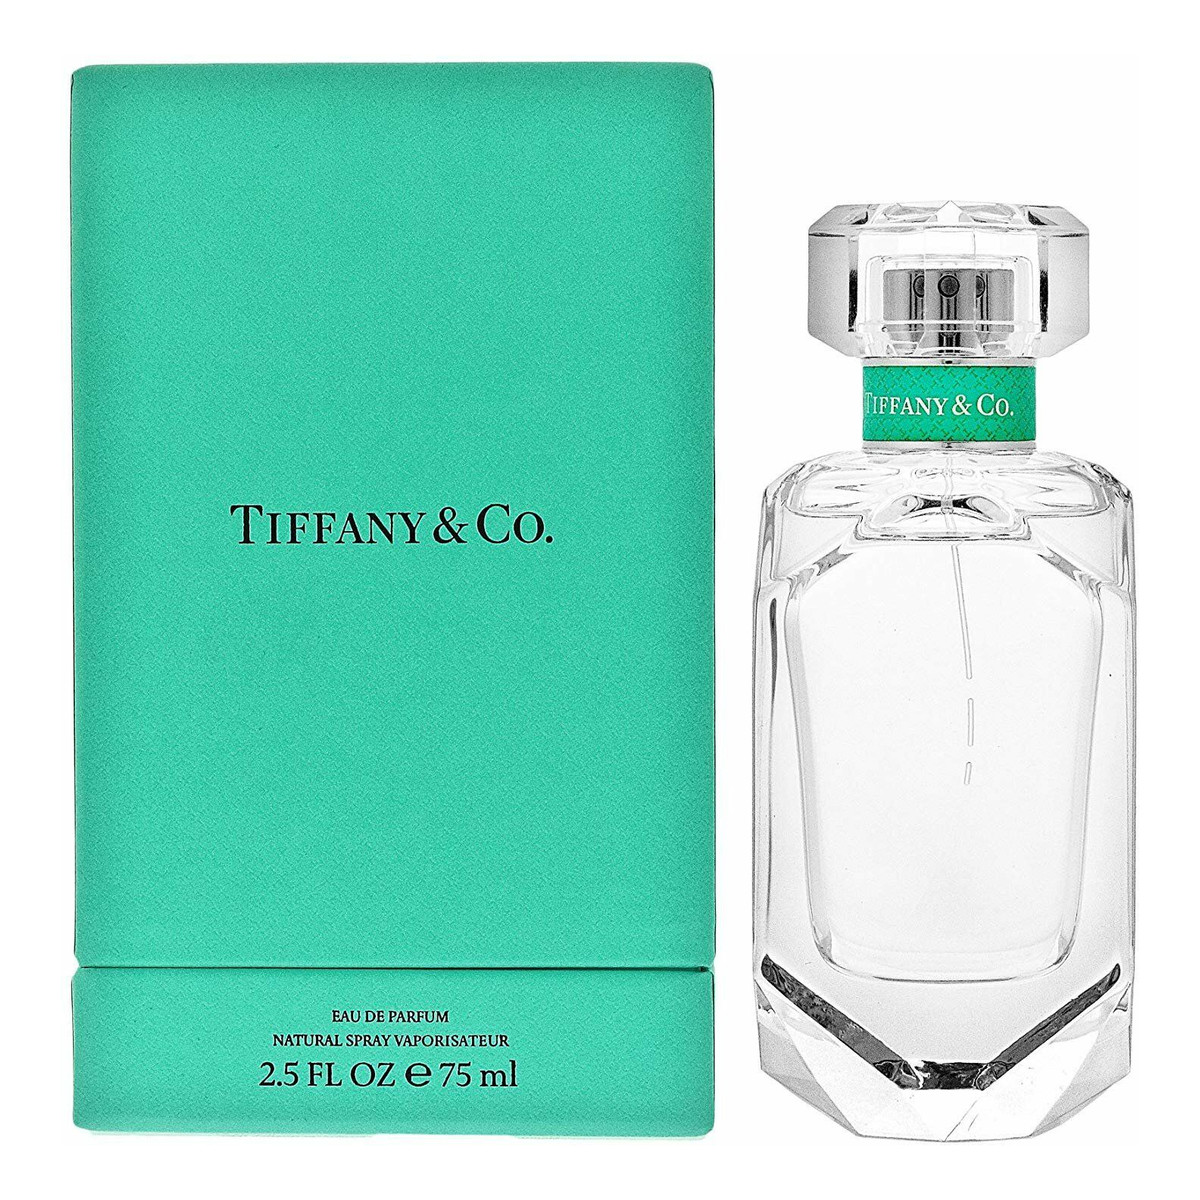 Tiffany & Co. woda perfumowana 75ml